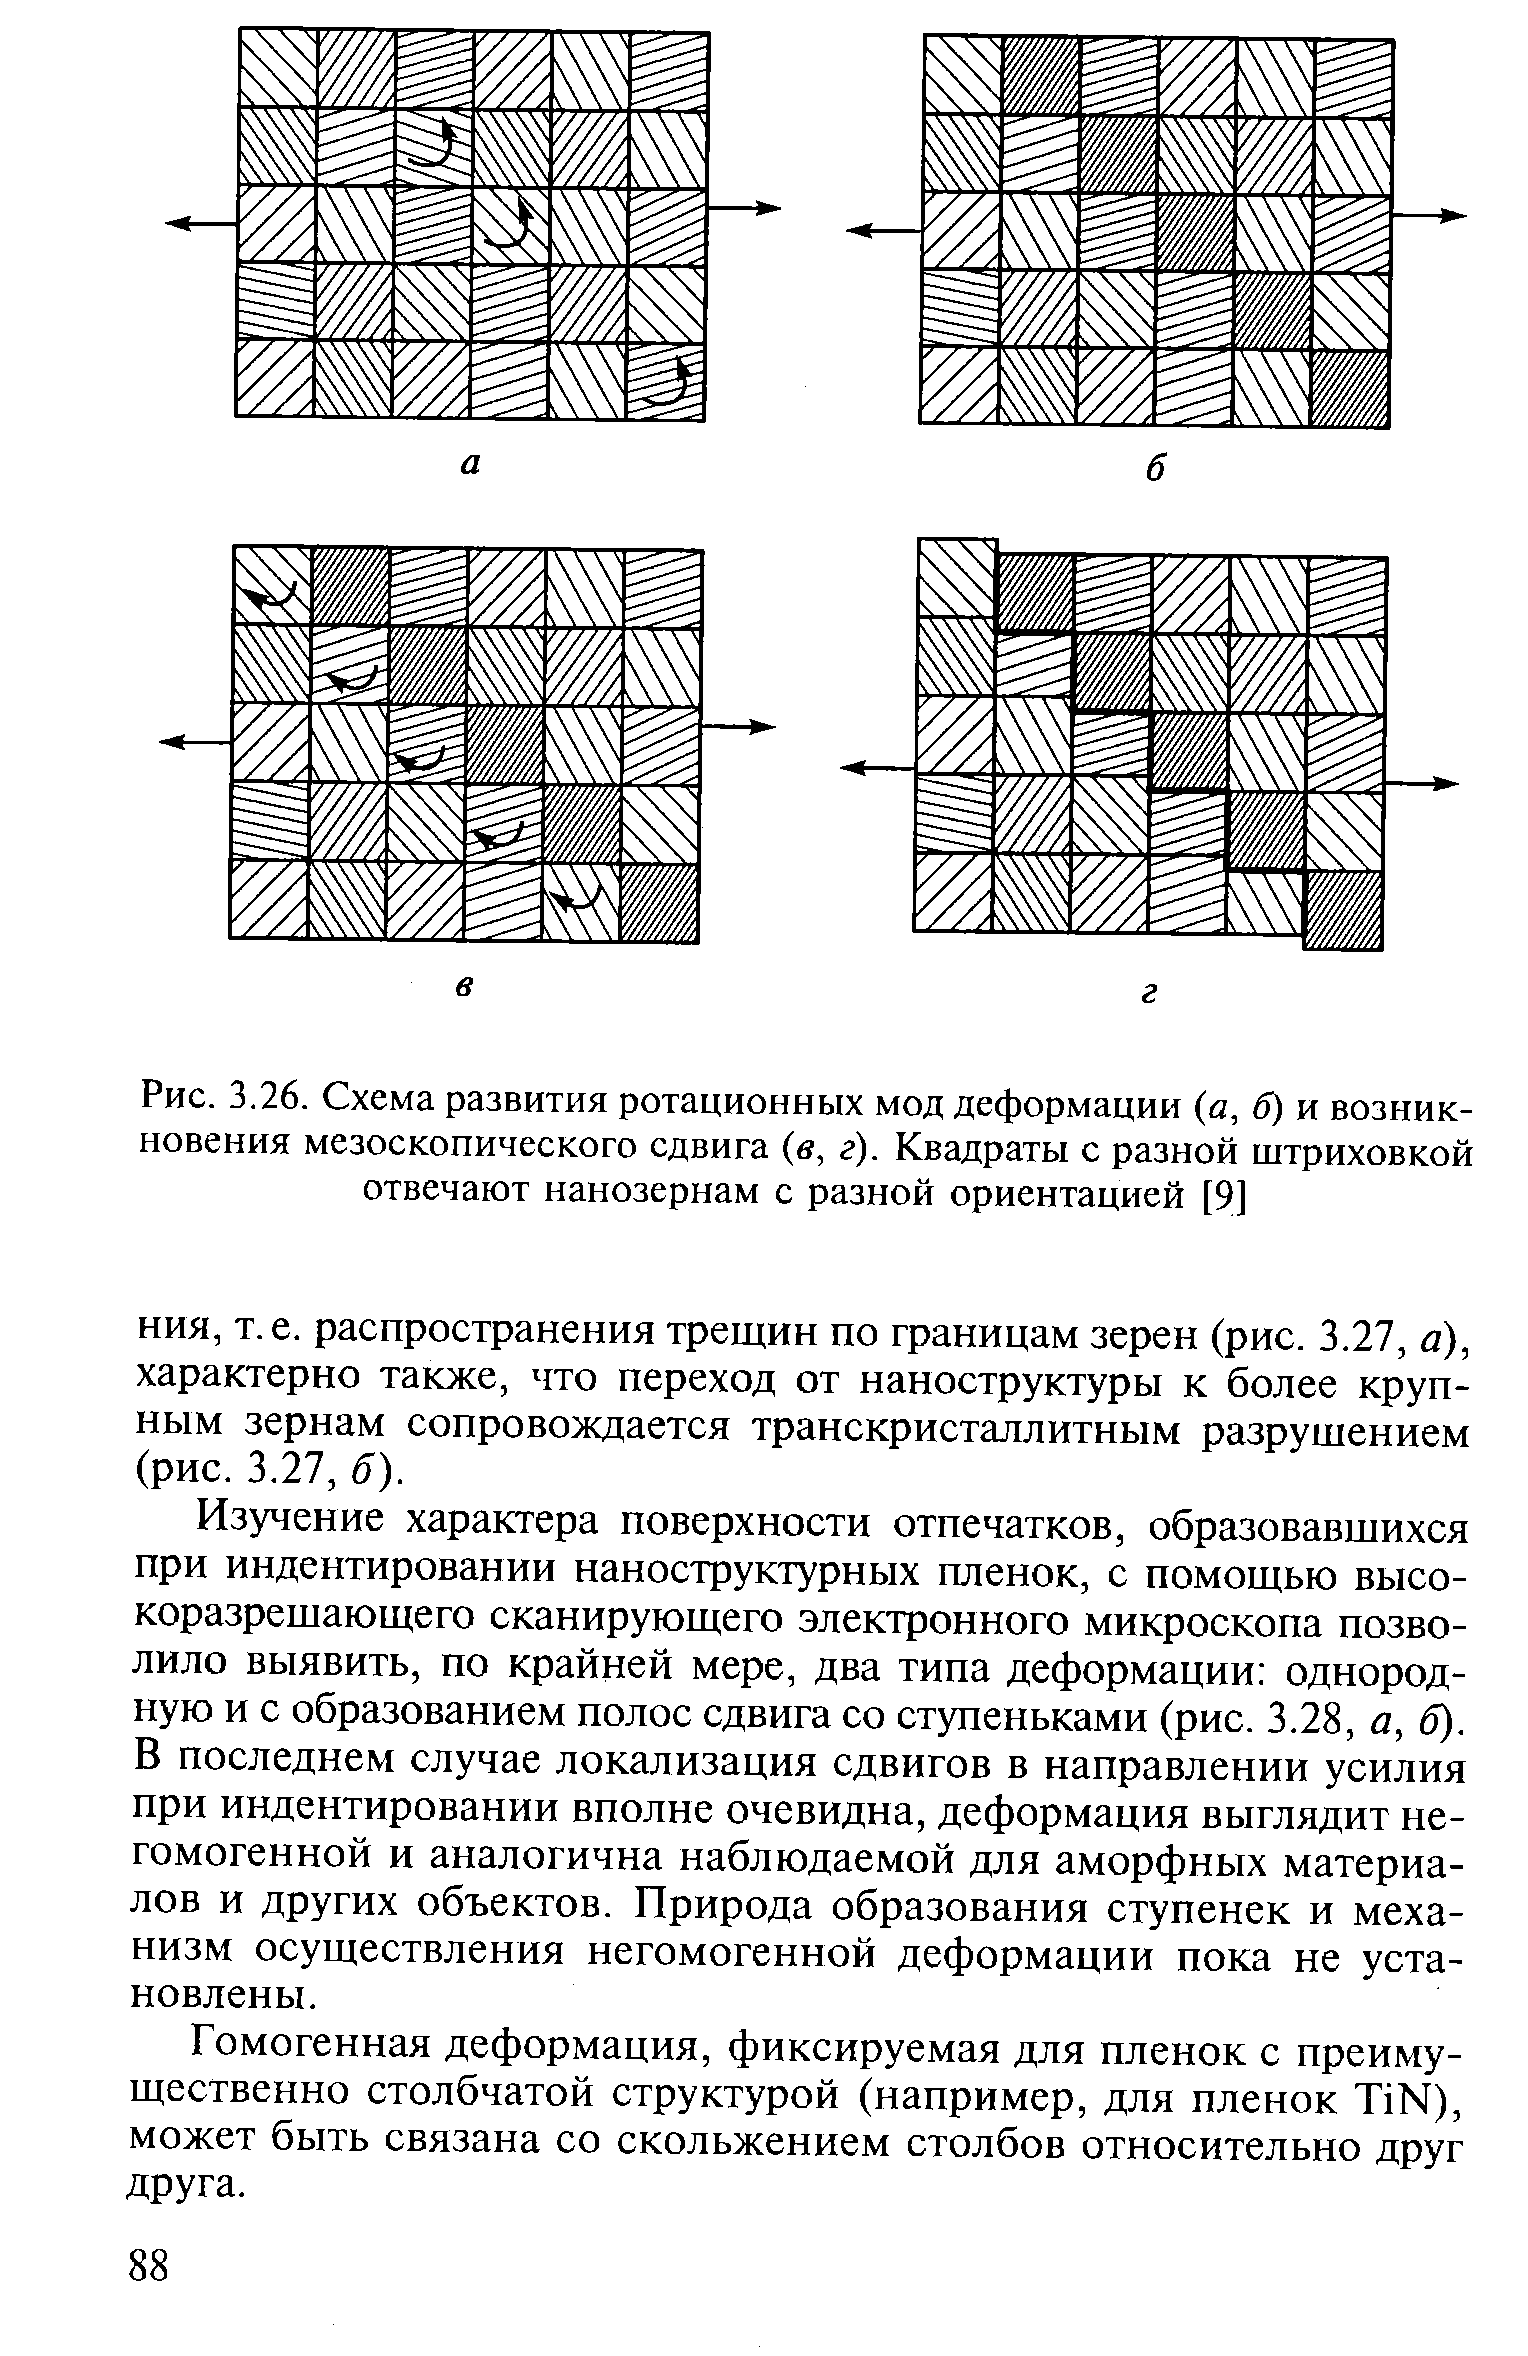 Рис. 3.26. Схема развития ротационных мод деформации (а, б) и возникновения мезоскопического сдвига (в, г). Квадраты с разной штриховкой отвечают нанозернам с разной ориентацией [9]
